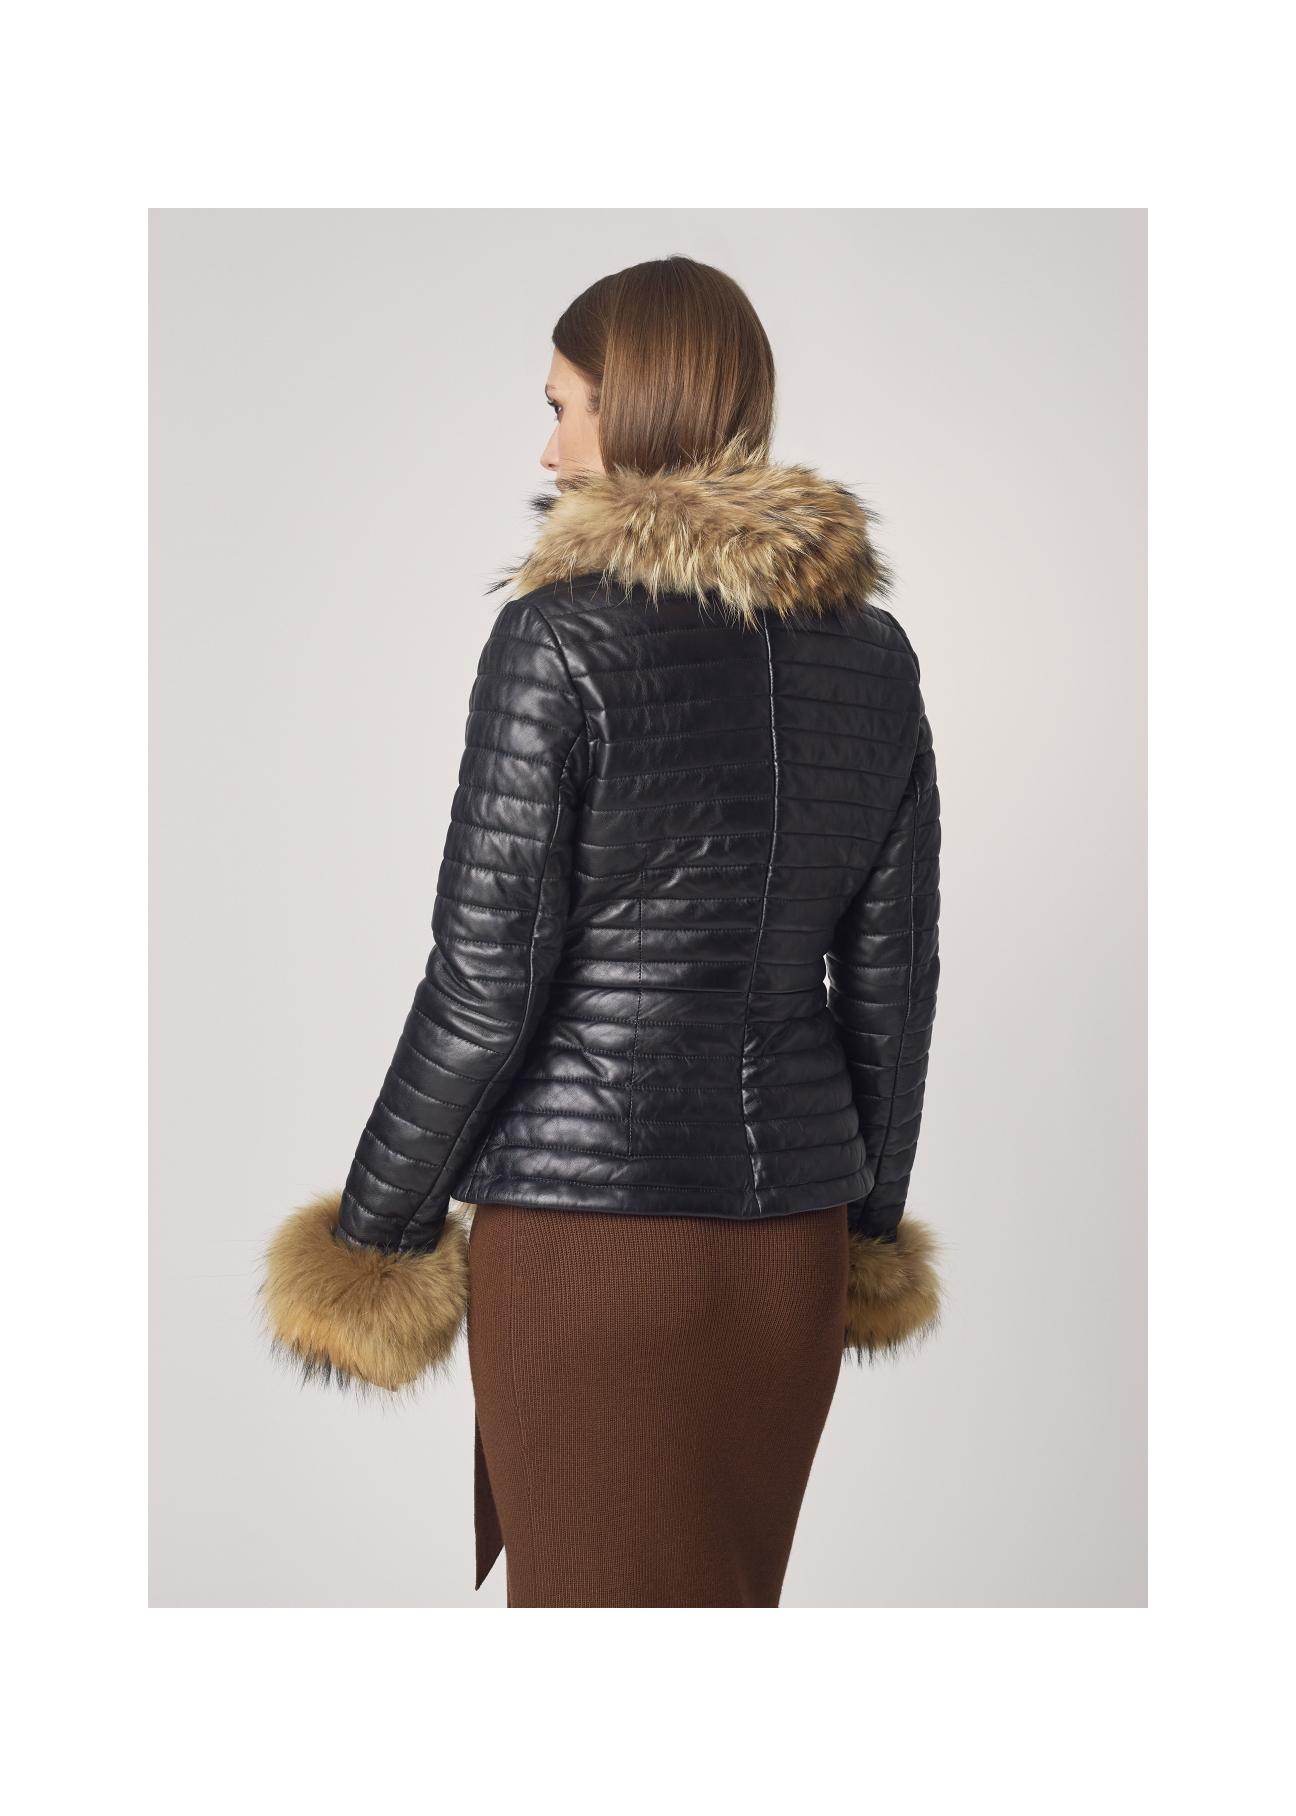 Skórzana kurtka damska o formie żakietowej KURDS-0256-5506(Z21)